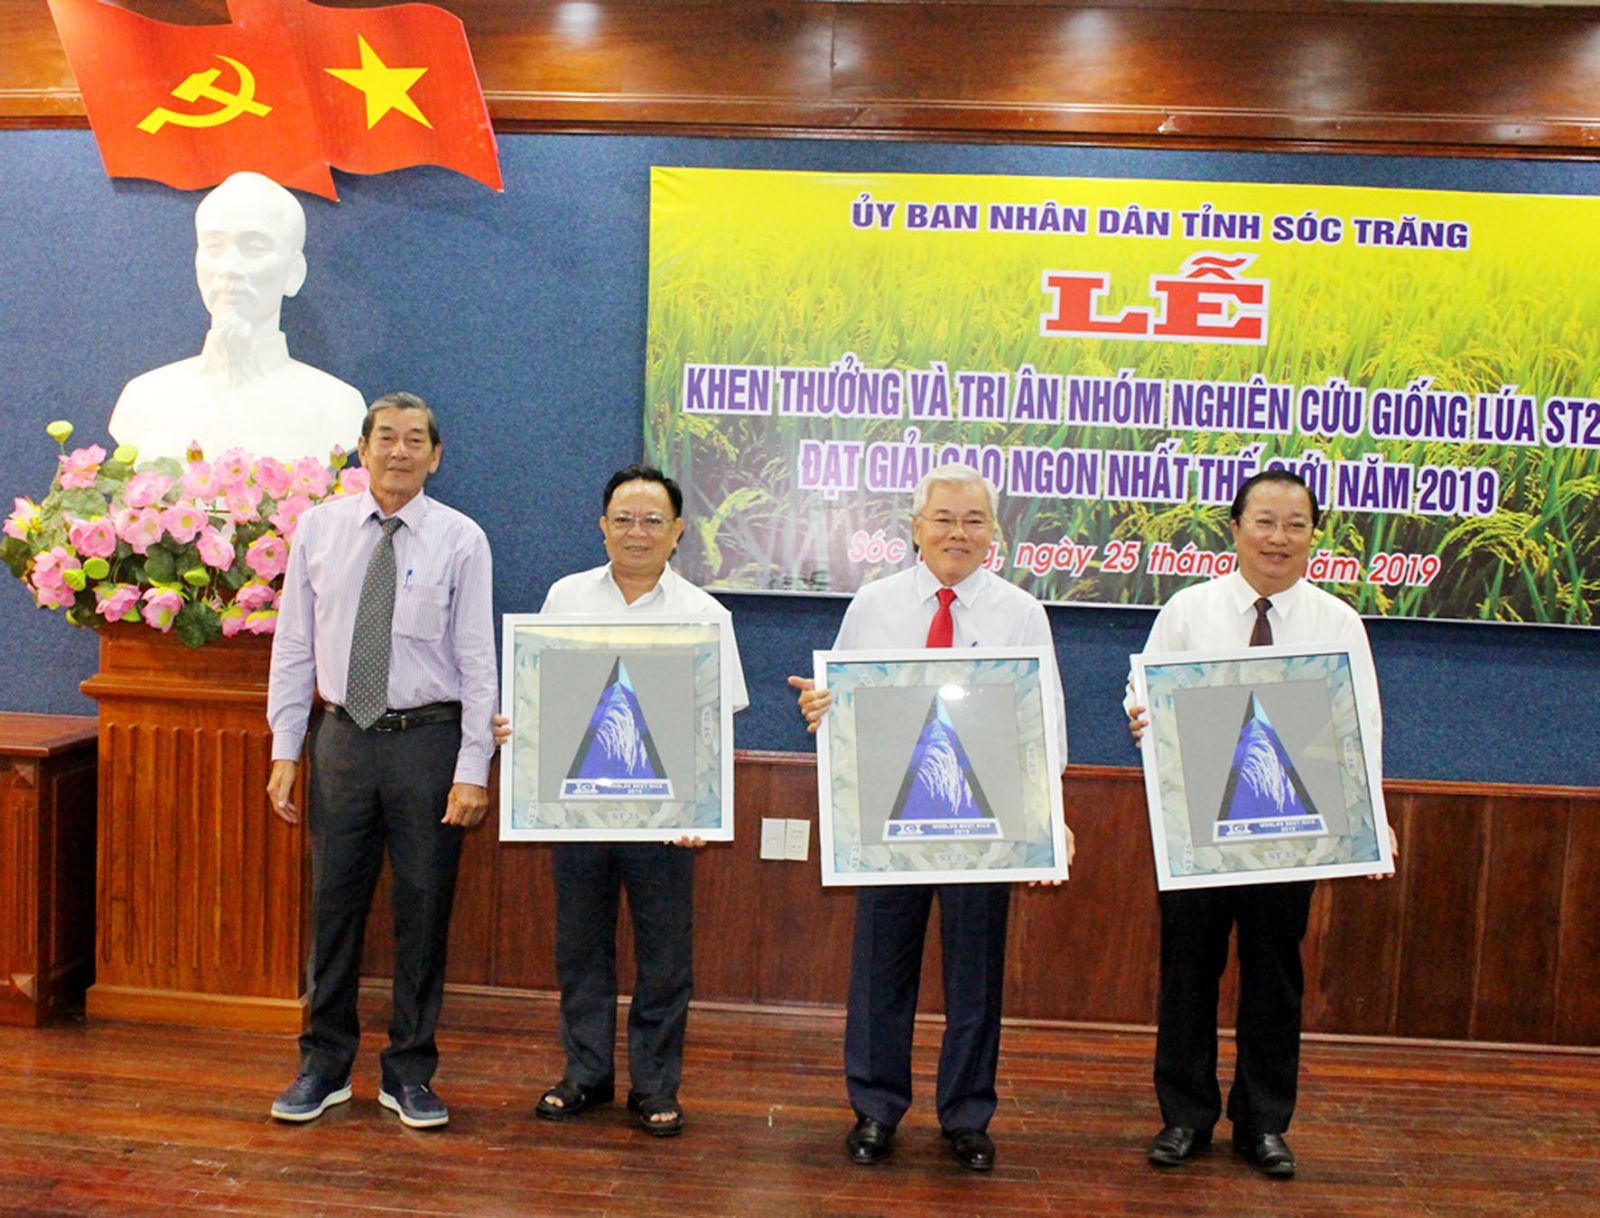 Anh hùng lao động Hồ Quang Cua (bìa trái) trao biểu tượng “gạo ngon nhất thế giới” vừa giành được tại hội thi cho lãnh đạo UBND tỉnh Sóc Trăng. Ảnh H.K